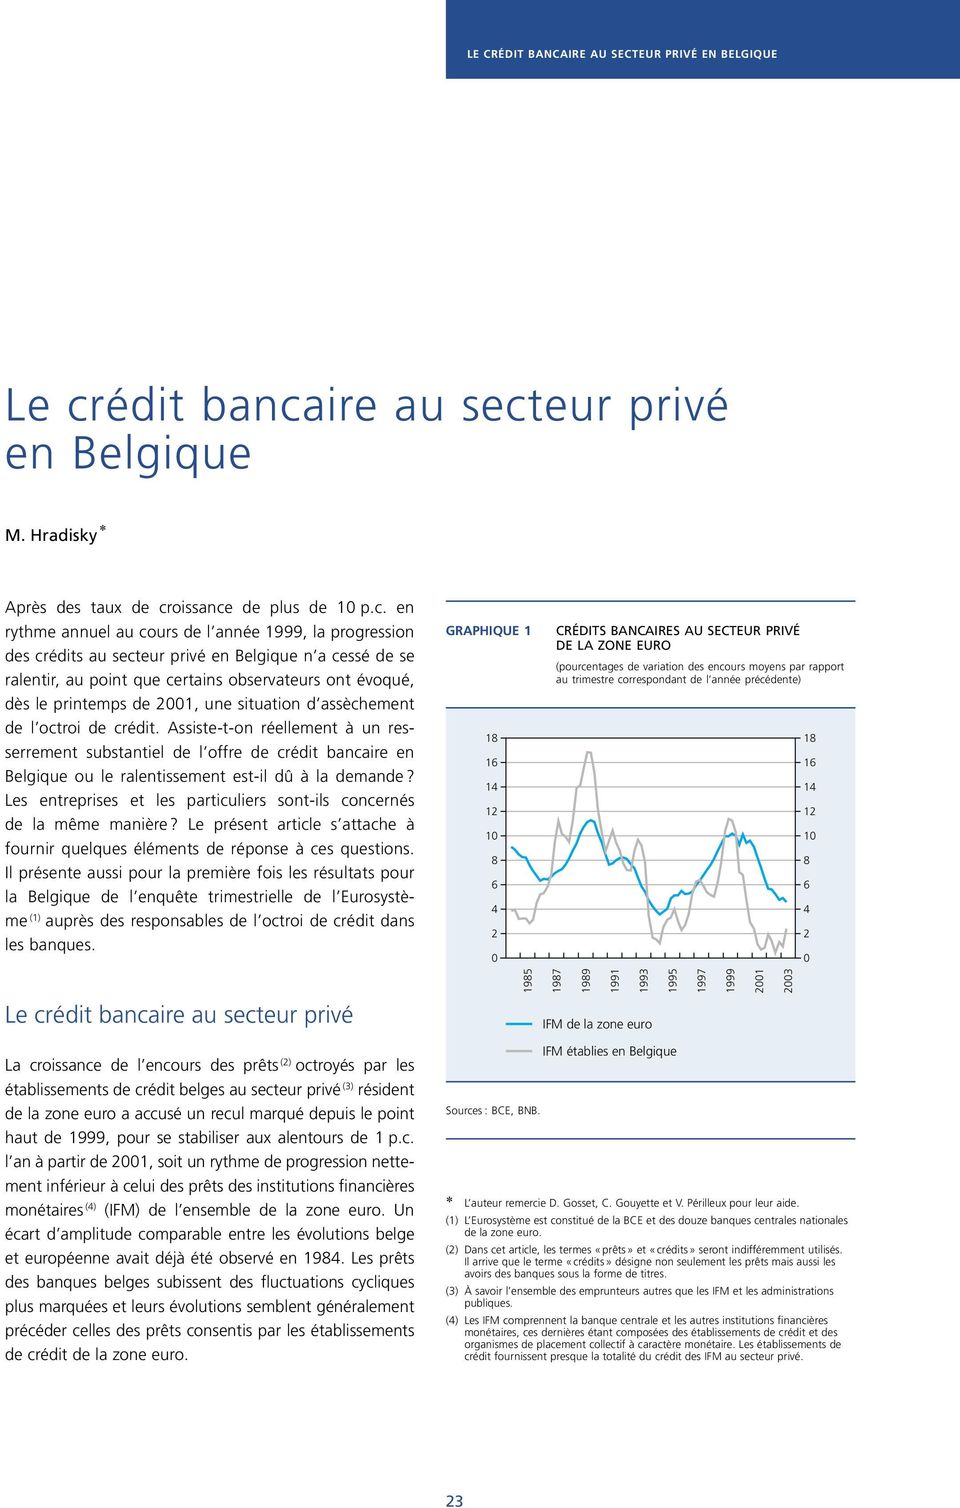 Assiste-t-on réellement à un resserrement substantiel de l offre de crédit bancaire en Belgique ou le ralentissement est-il dû à la demande?